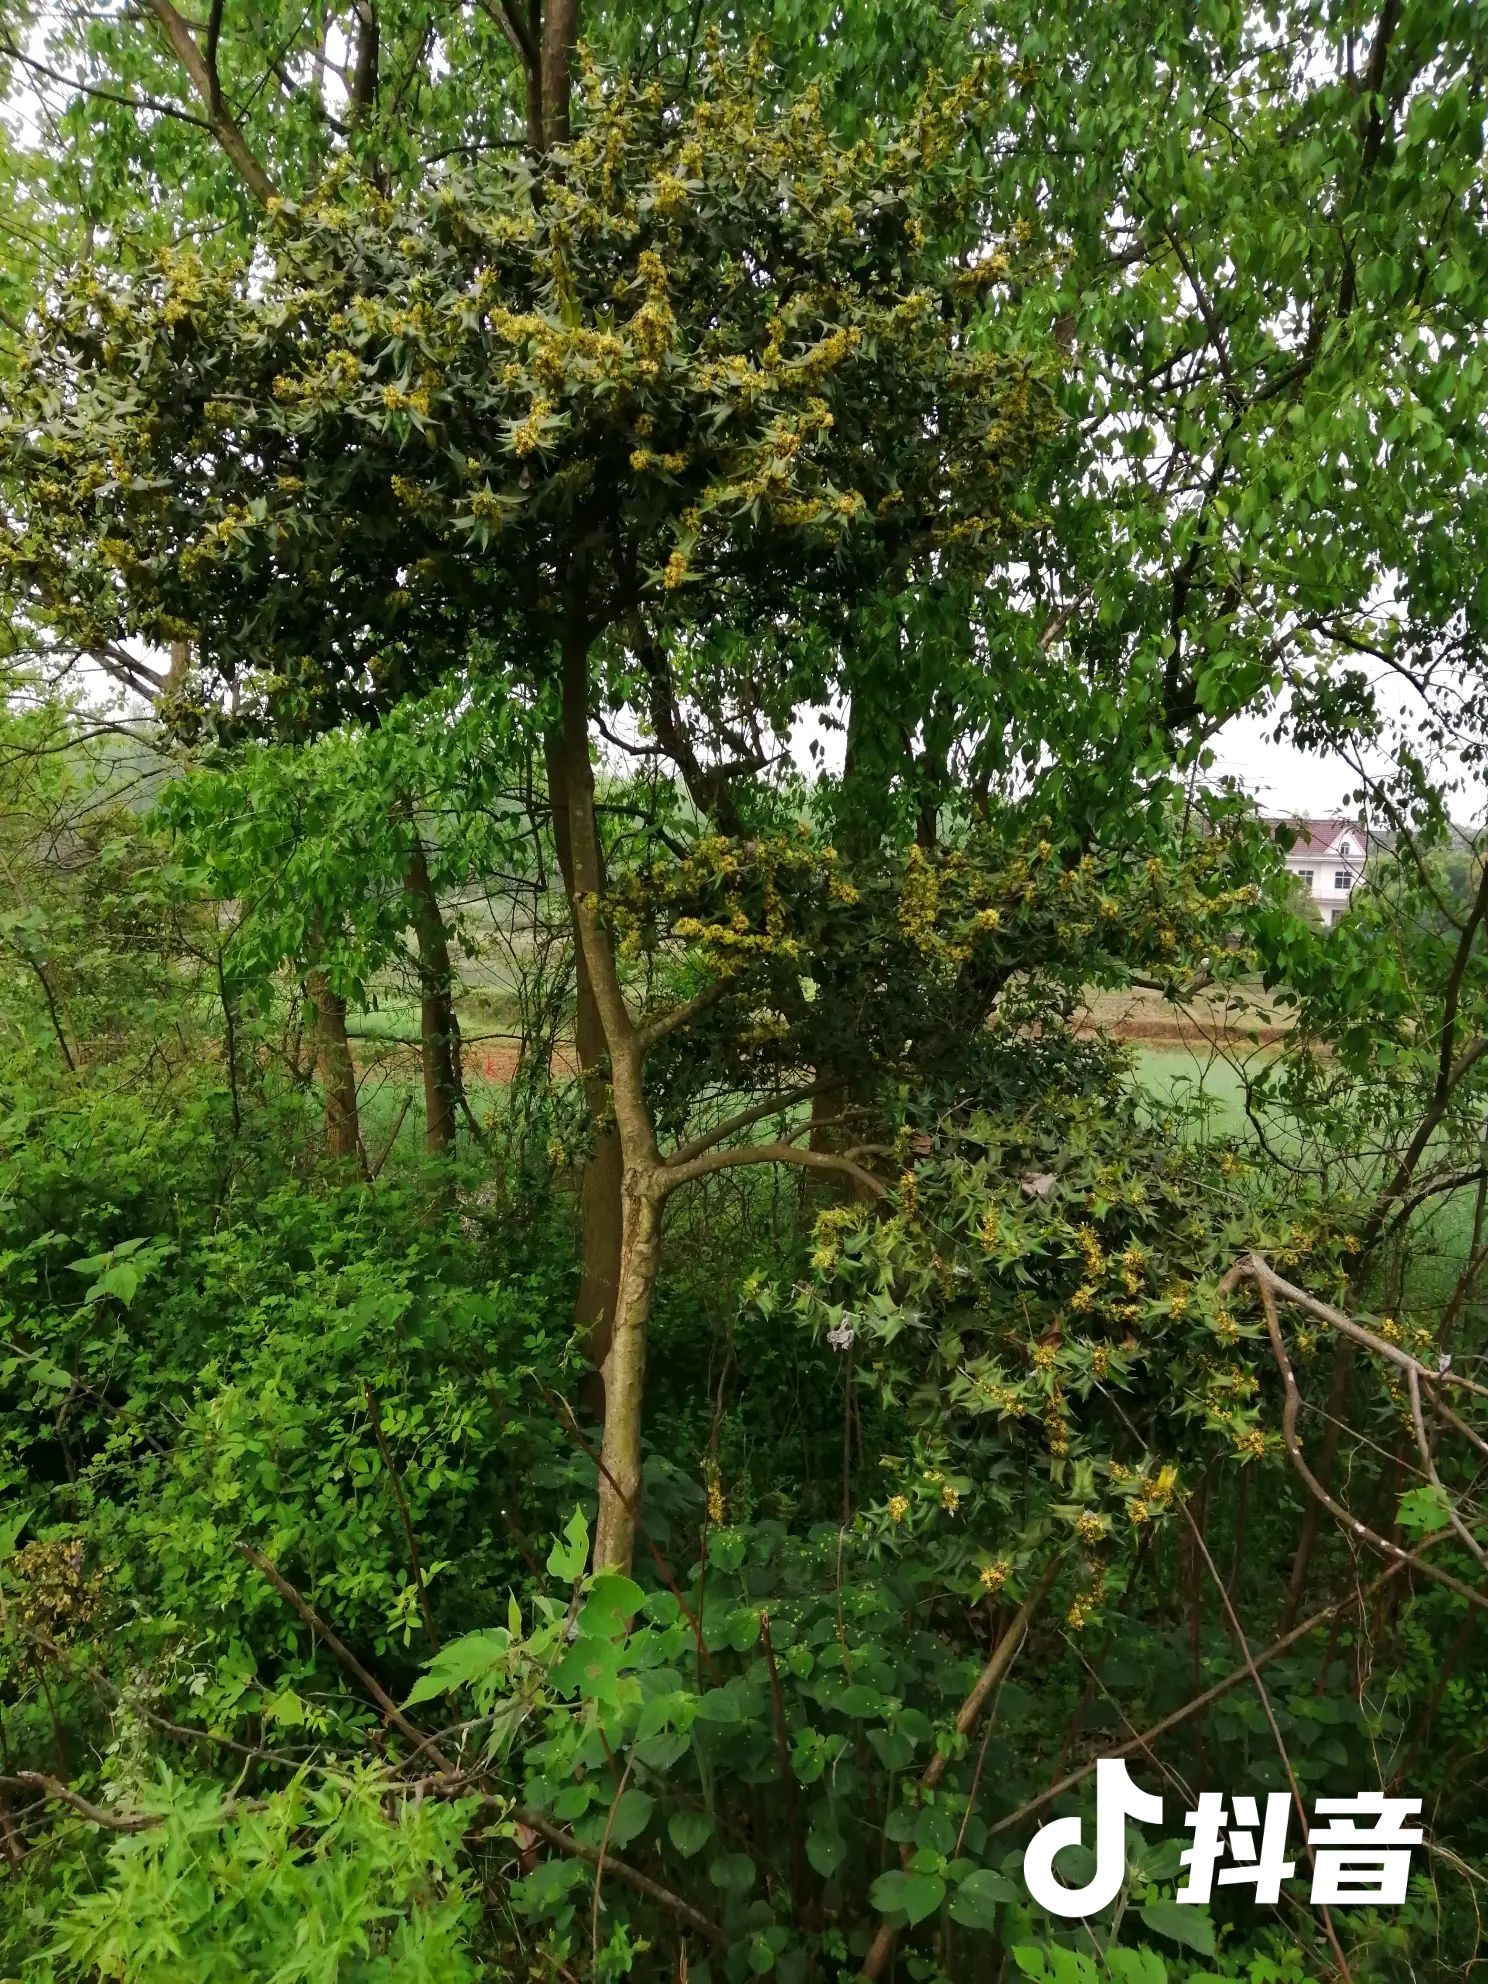 安徽省芜湖市无为县有刺枸骨 野生大枸骨树,型似迎客松,树高3.5米